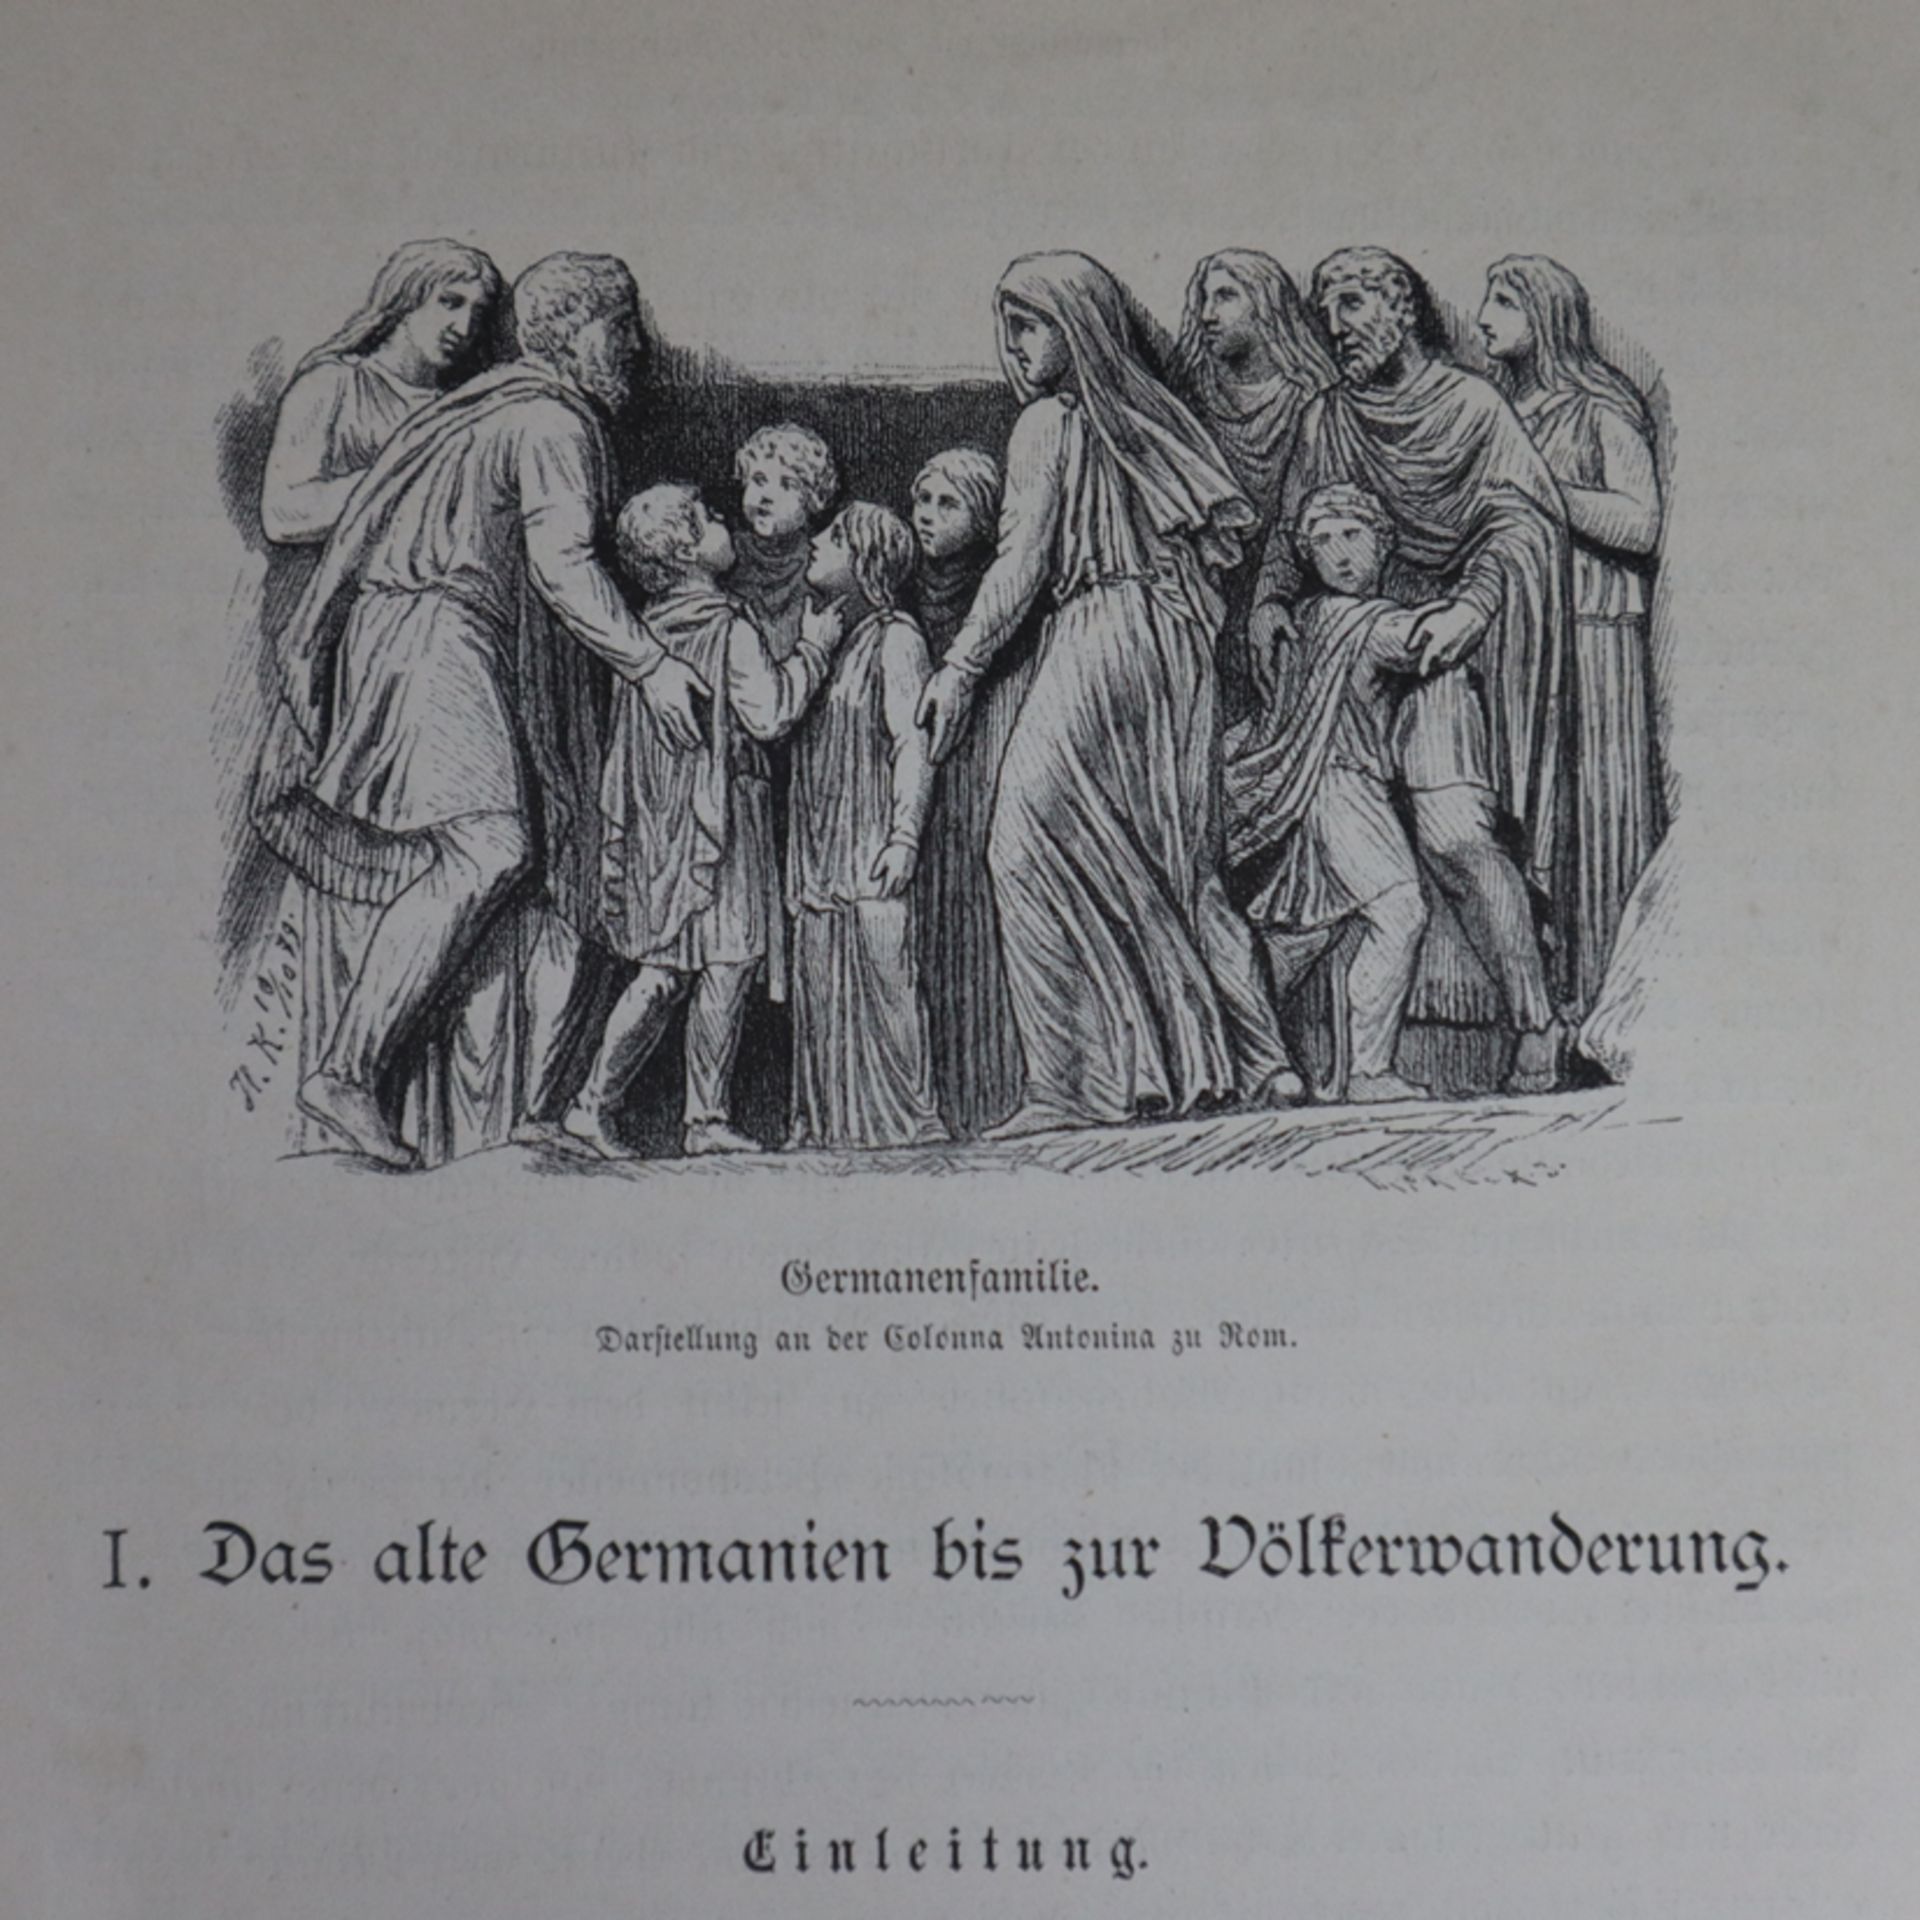 Deutsche Geschichte von L. Stacke - 2 Bände, zweite Auflage, Verlag von Velhagen & Klasing, Bielefe - Image 7 of 8